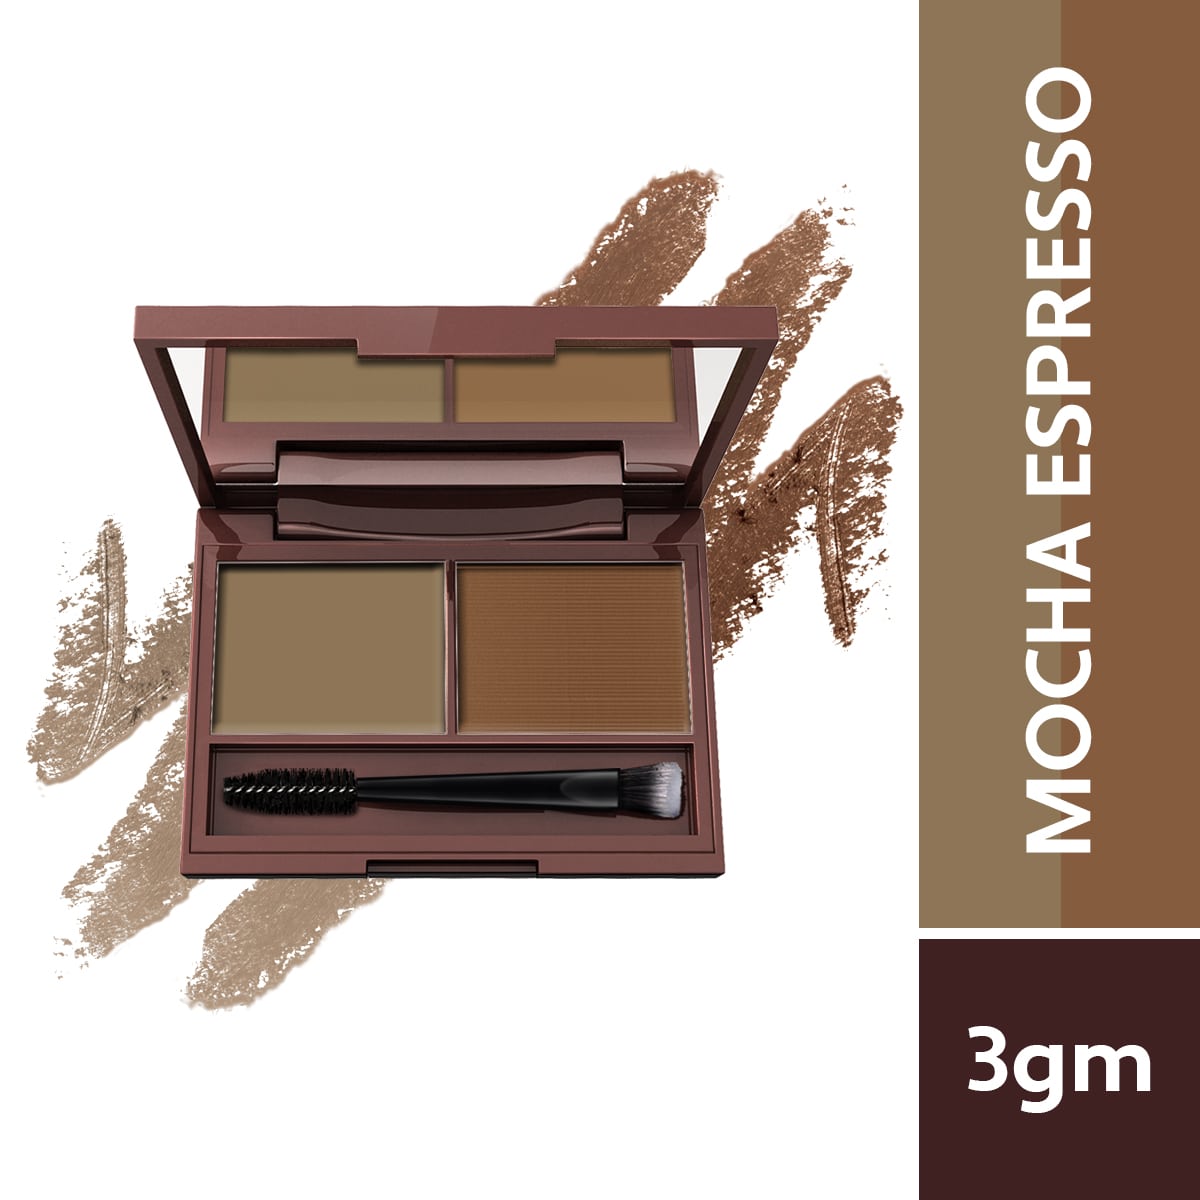 Biotique Natural Makeup Diva Define Perfect Brow Filler, Mocha Espresso, 3g